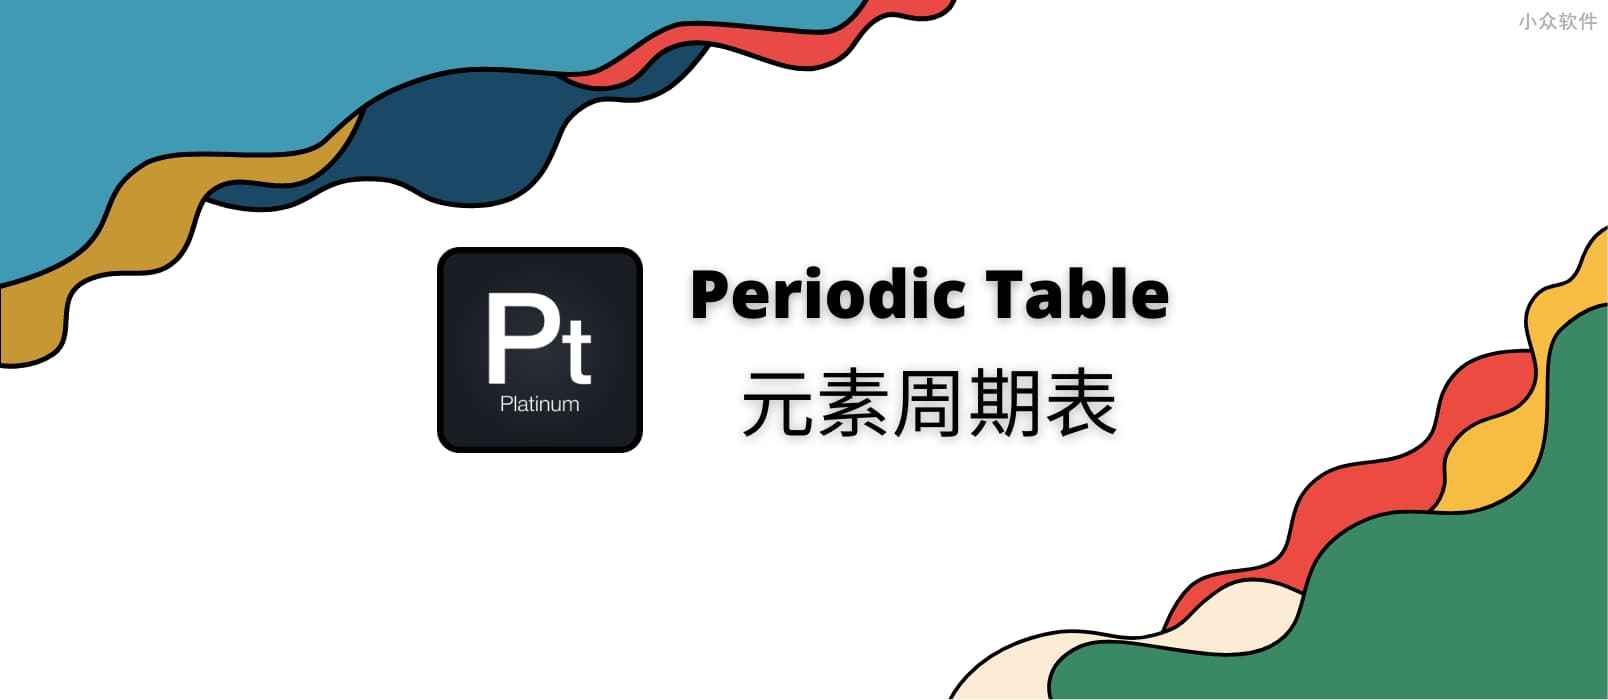 元素周期表 – 在 Android、iPhone、iPad 上，超过 4.8 评分的免费中文元素周期表应用